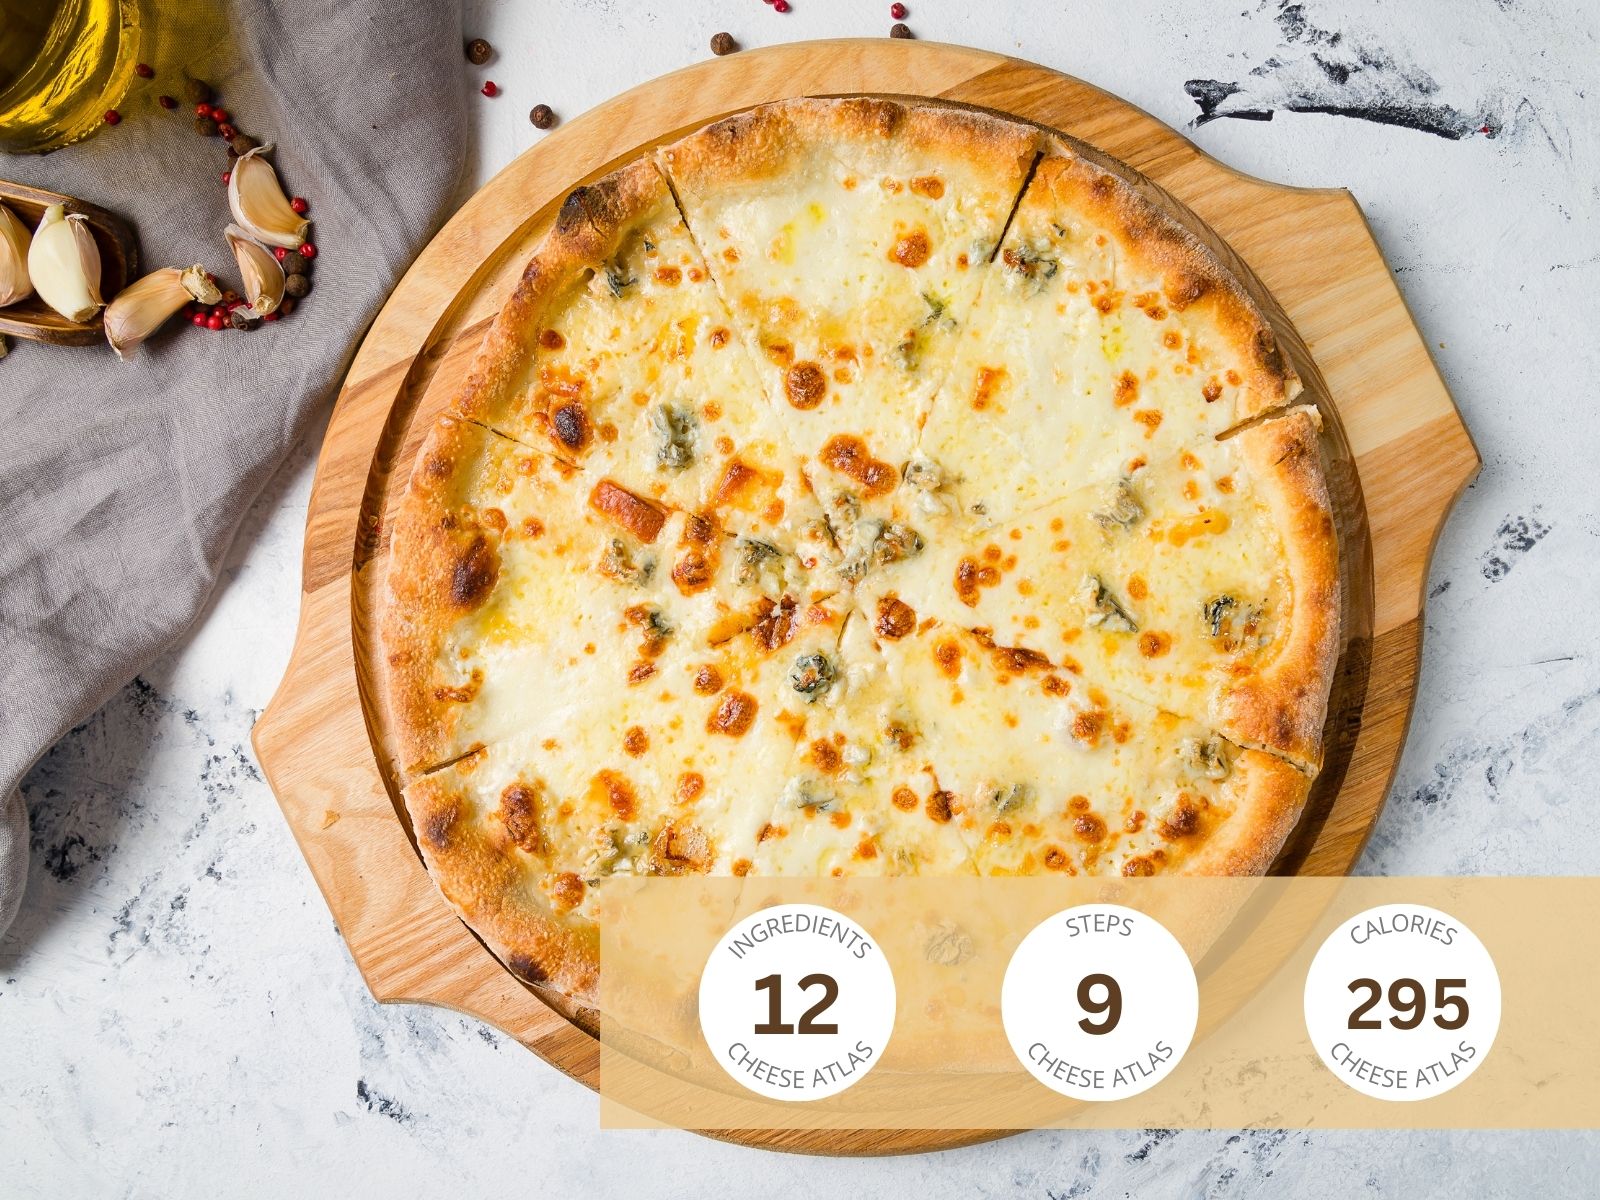 Quattro Formaggi Pizza: Four Cheese Delight in Every Bite